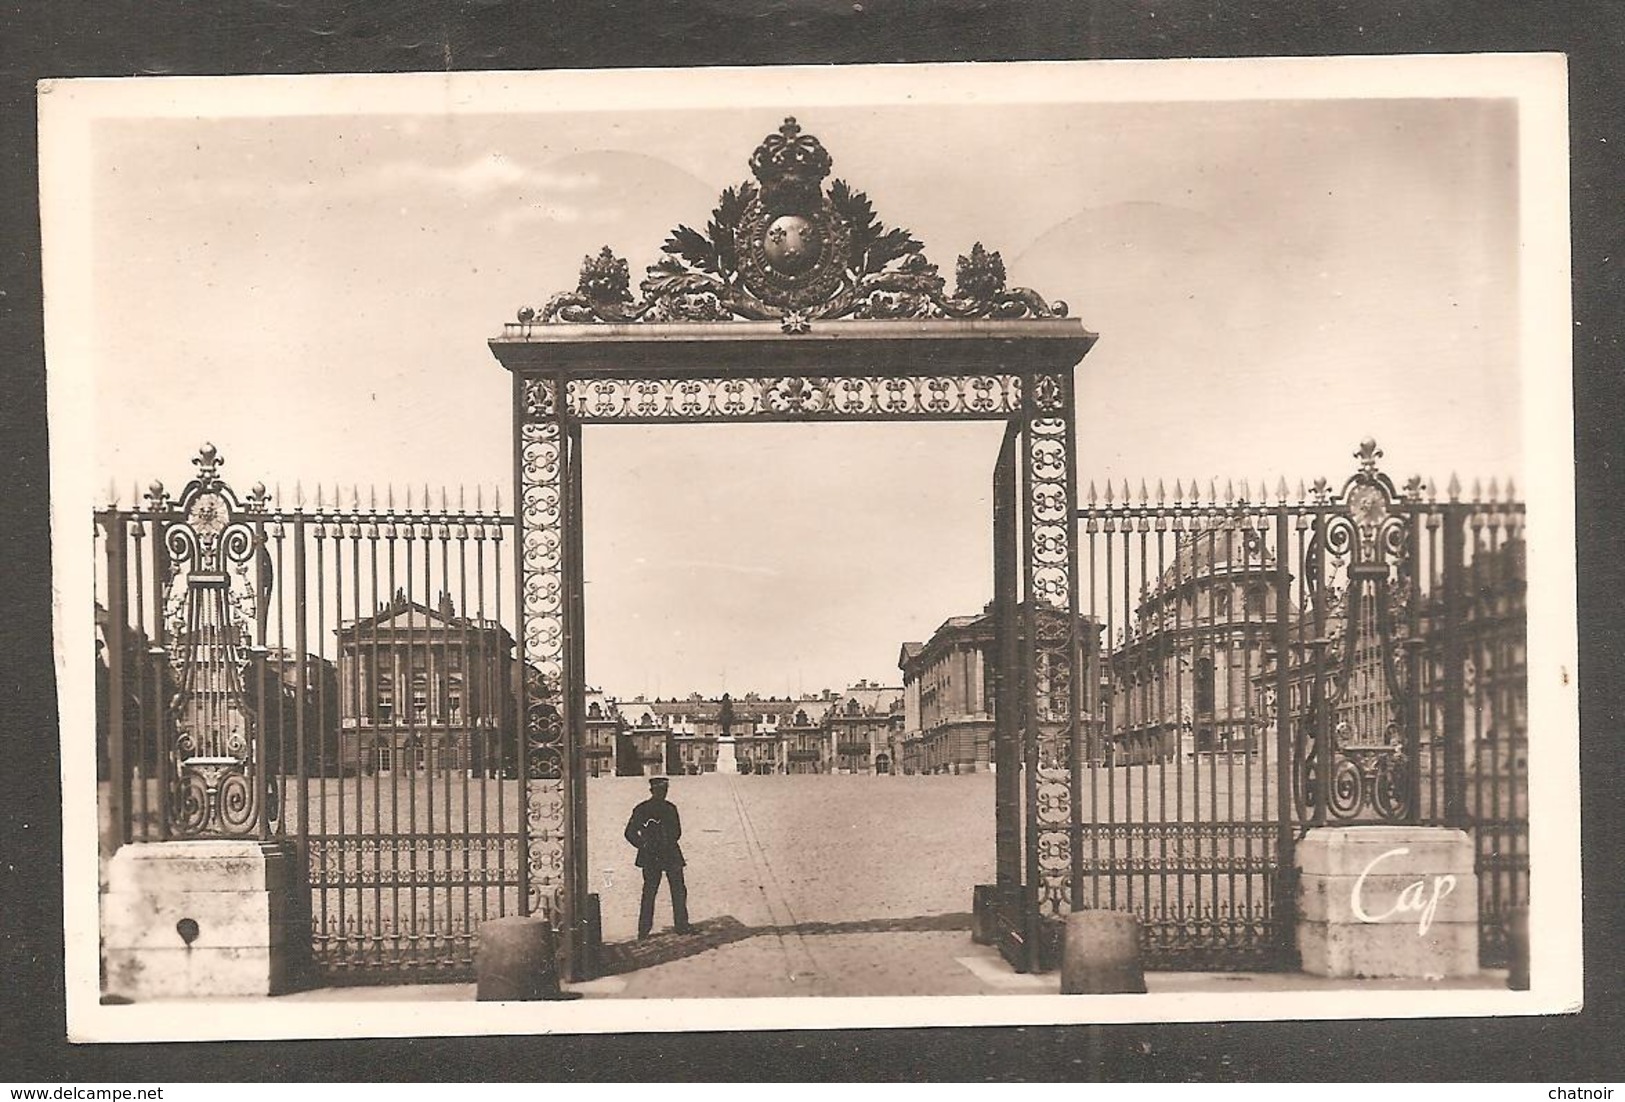 Carte Postale   VERSAILLES + Timbre 18f Versailles  Oblit  Premier Jour  1952 - Lettres & Documents